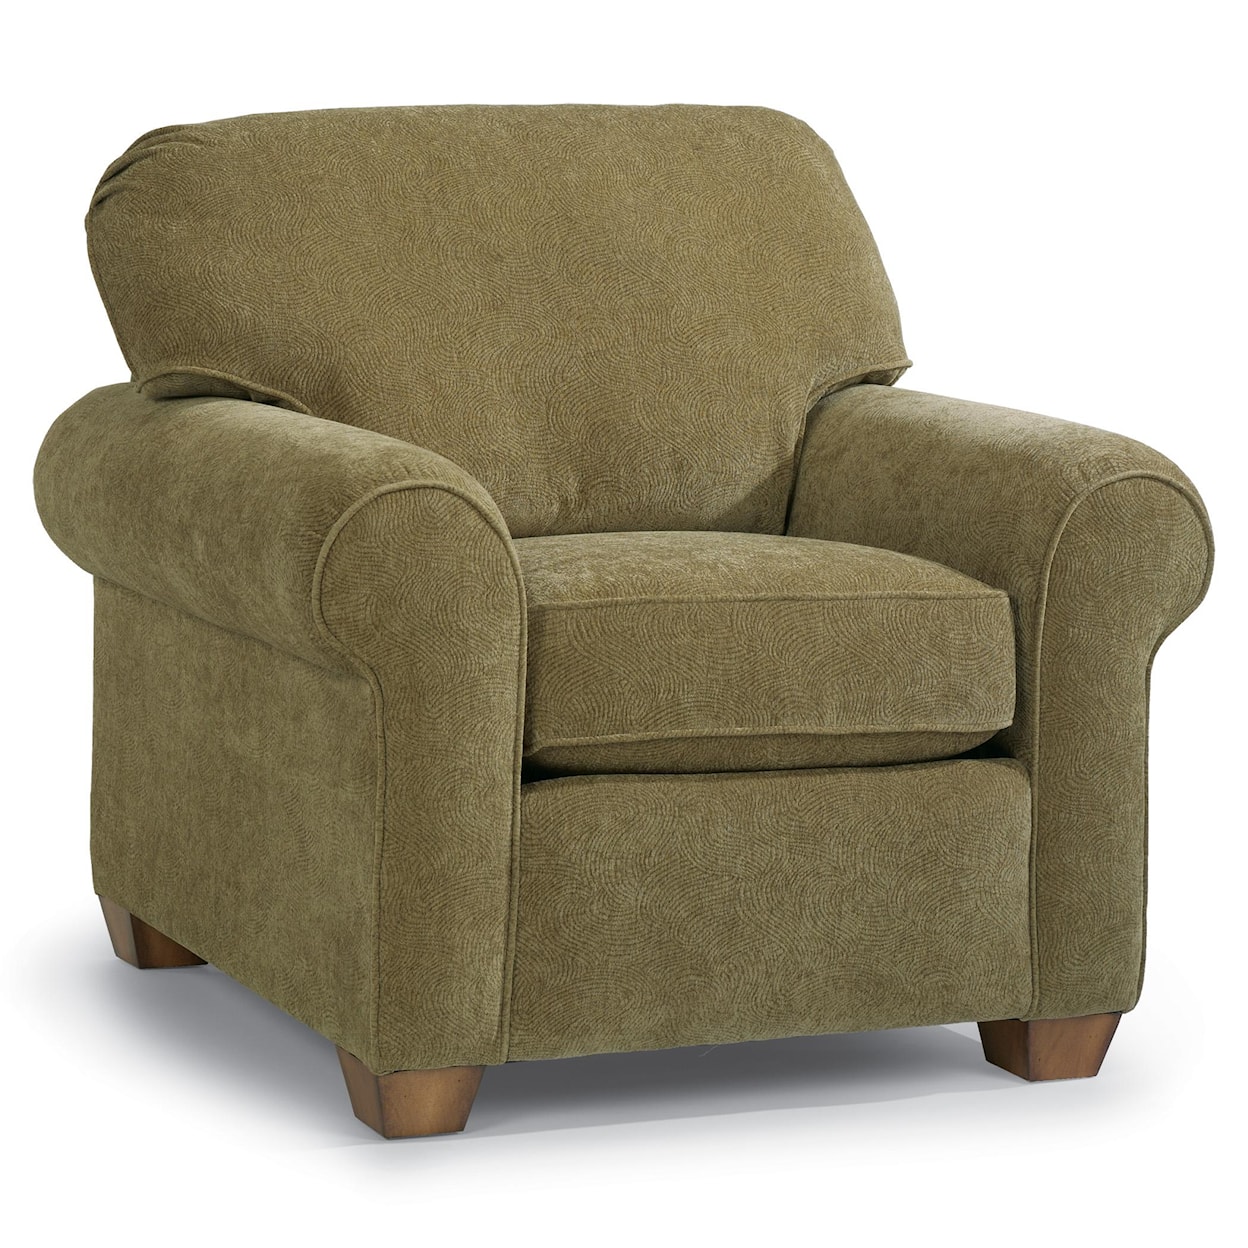 Flexsteel Thornton 5535 Upholstered Chair